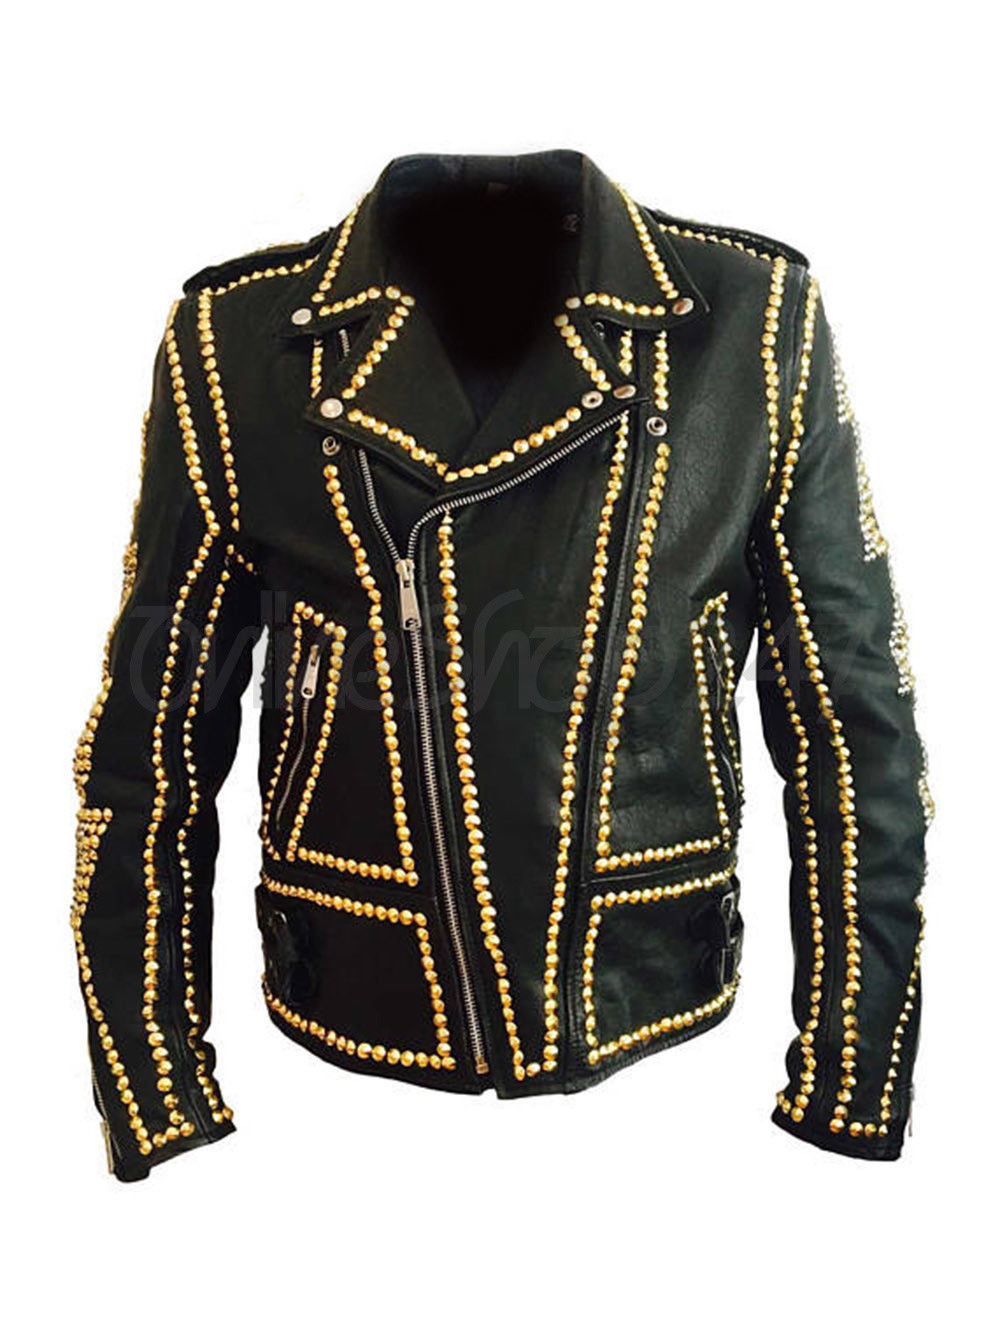 New Mens Punk Rock Black Full Golden Rivets Studded Unique Skull Leather Jacket